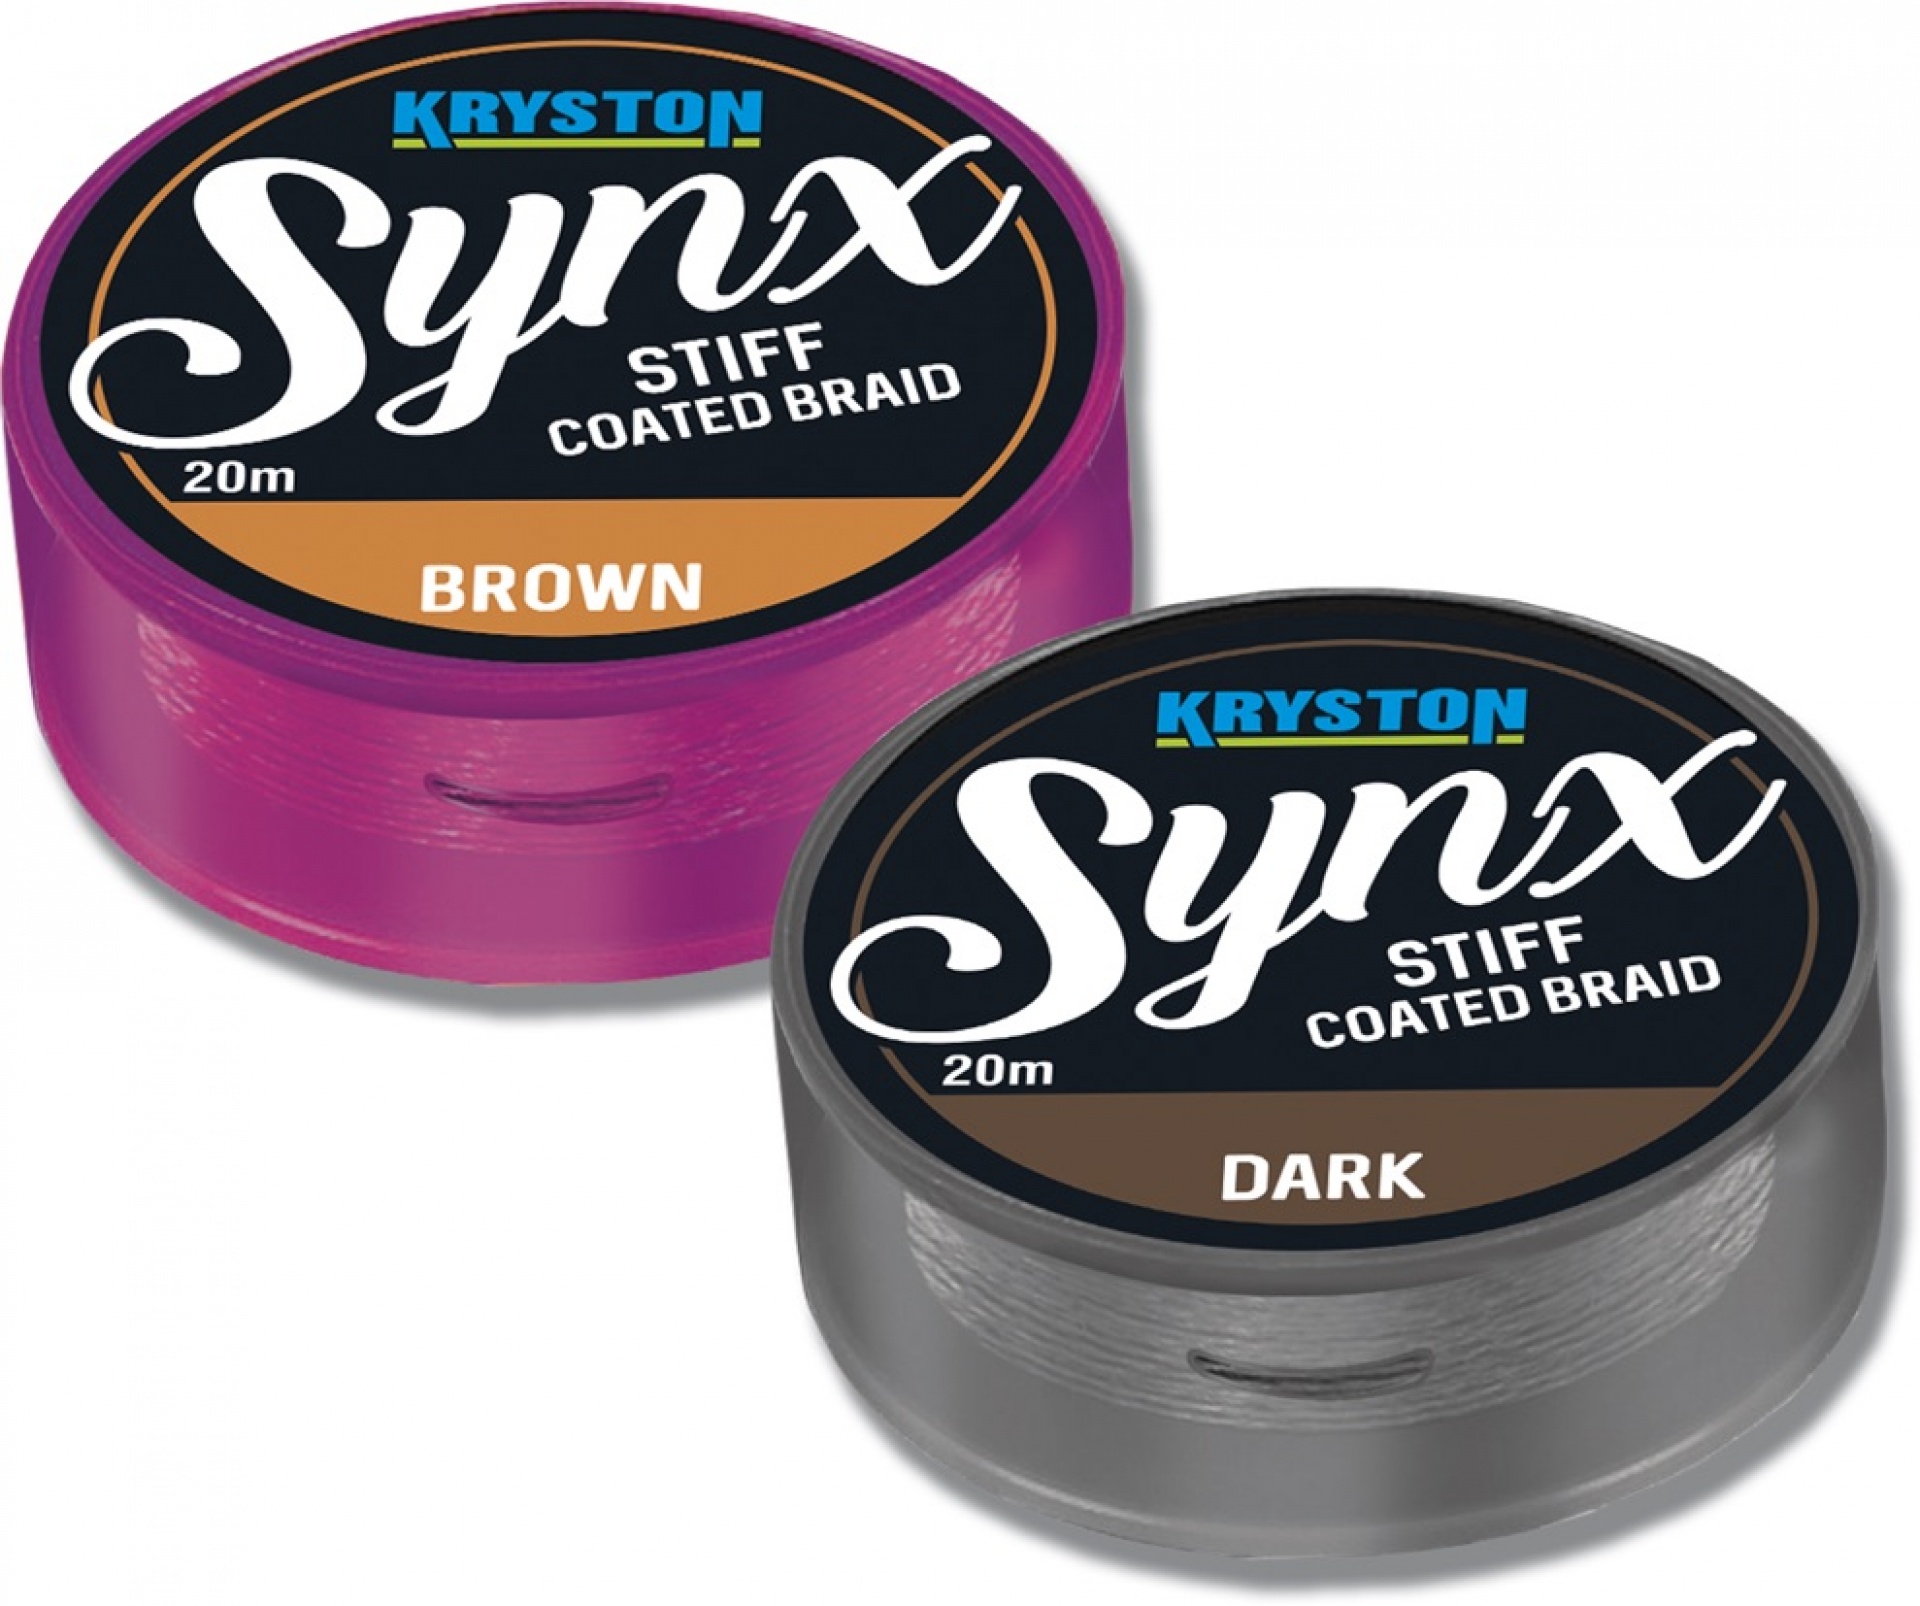 Kryston Synx Stiff Coated Braid